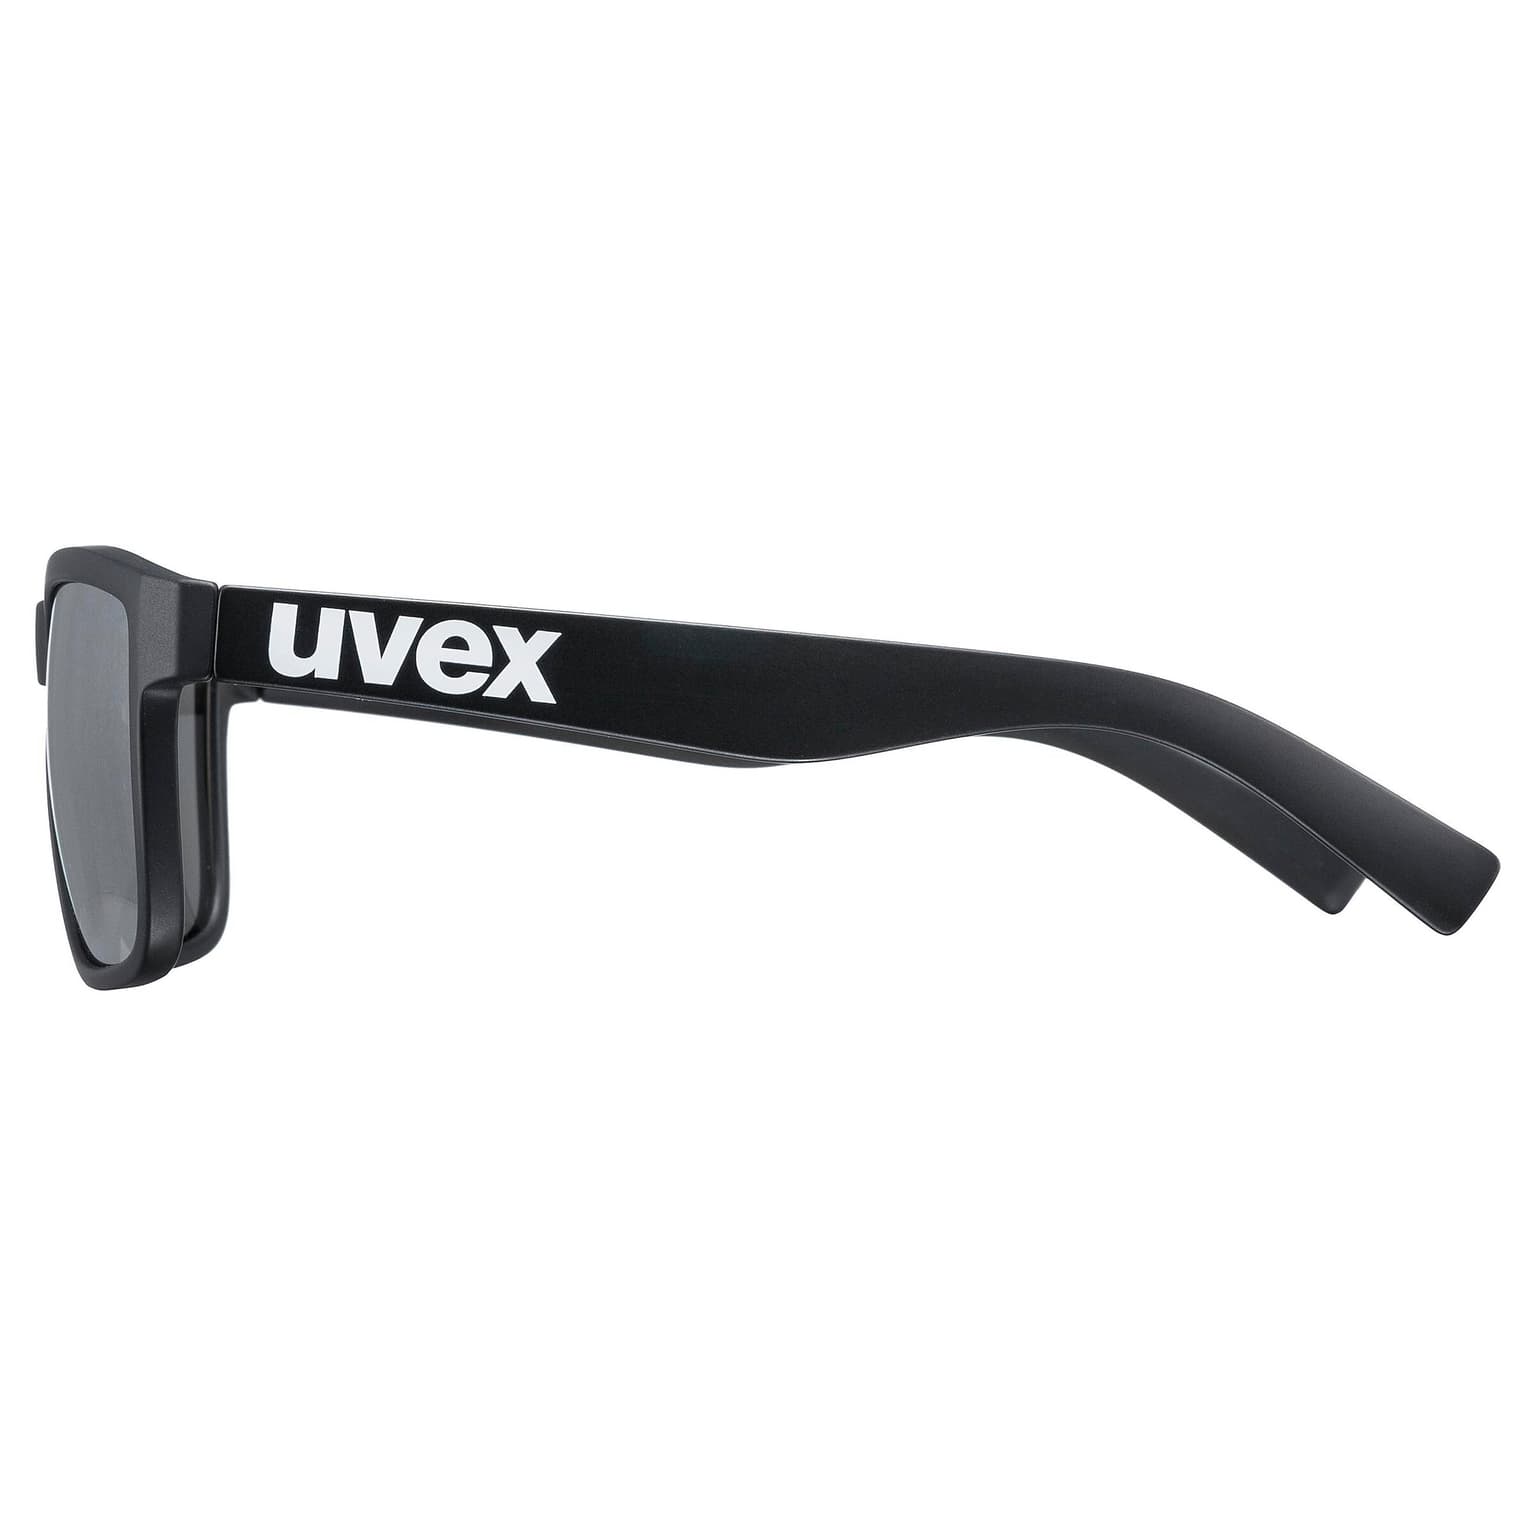 Uvex Uvex Lifestyle lgl 39 Sportbrille schwarz 2